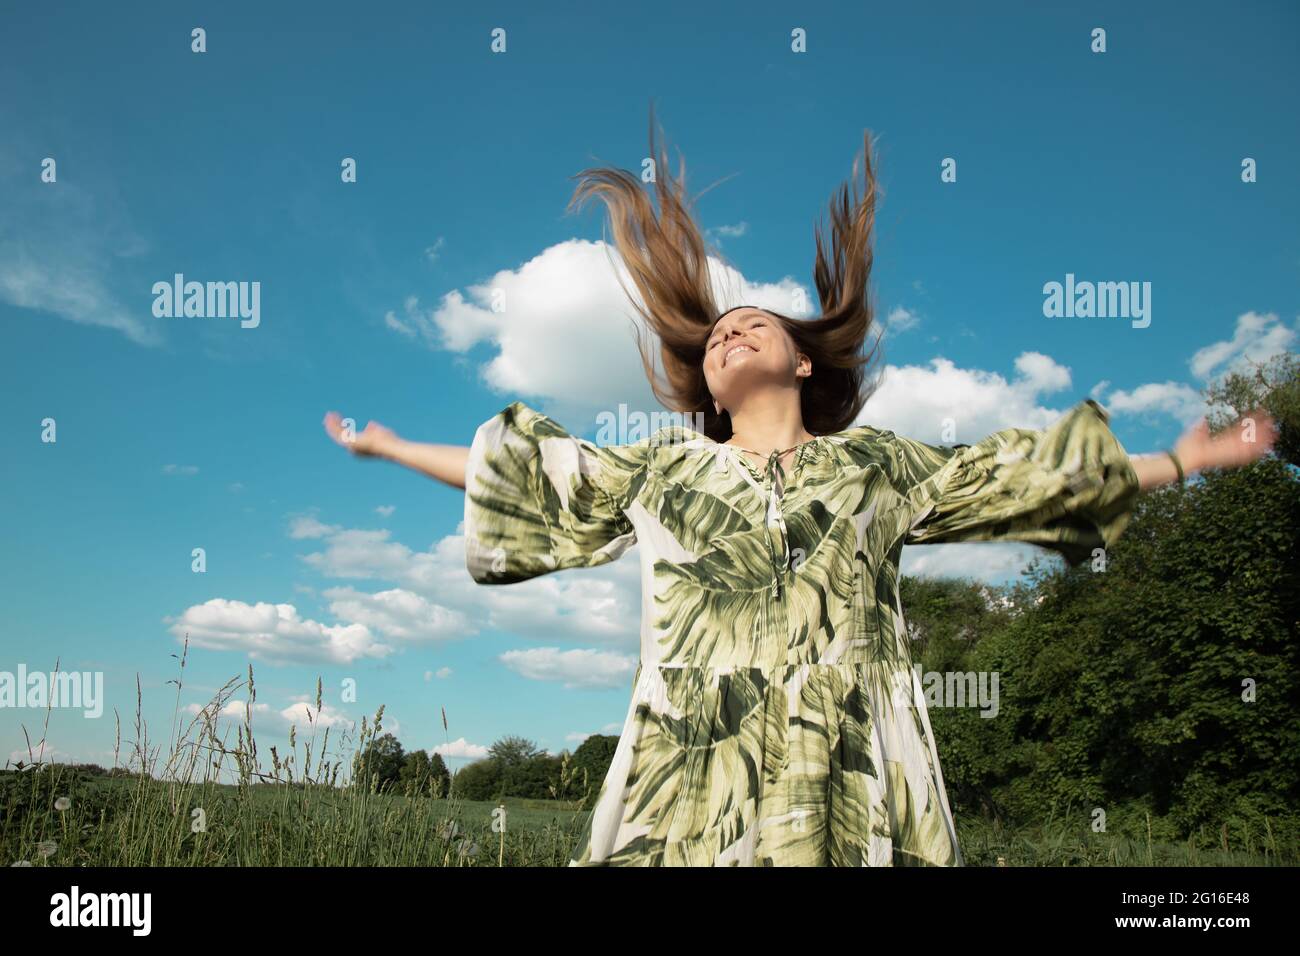 Junge Frau in Kleid im grünen Feld mit ausgestreckten Händen zu blauen Himmel und Sonne, fliegende Haare. Konzept von Glück, Freiheit und Unabhängigkeit Stockfoto